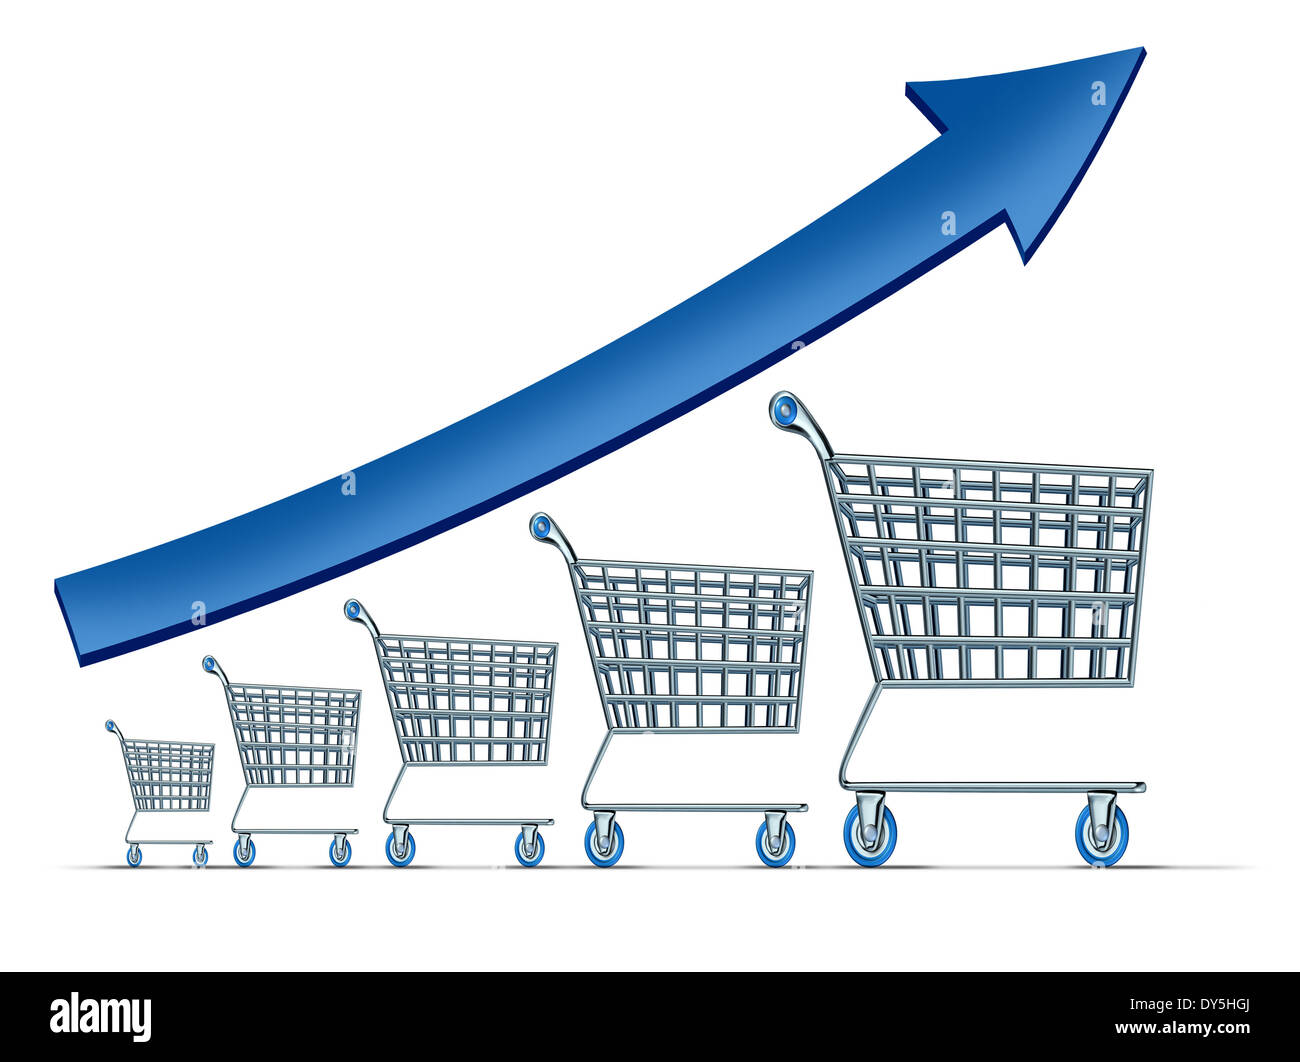 Die Umsatzsteigerung Symbol als eine Gruppe von steigenden Einkaufswagen mit einem blauen Pfeil hinauf als Metapher für erfolgreiche kommerzielle Einzelhandel Konsum auf weißem Hintergrund. Stockfoto